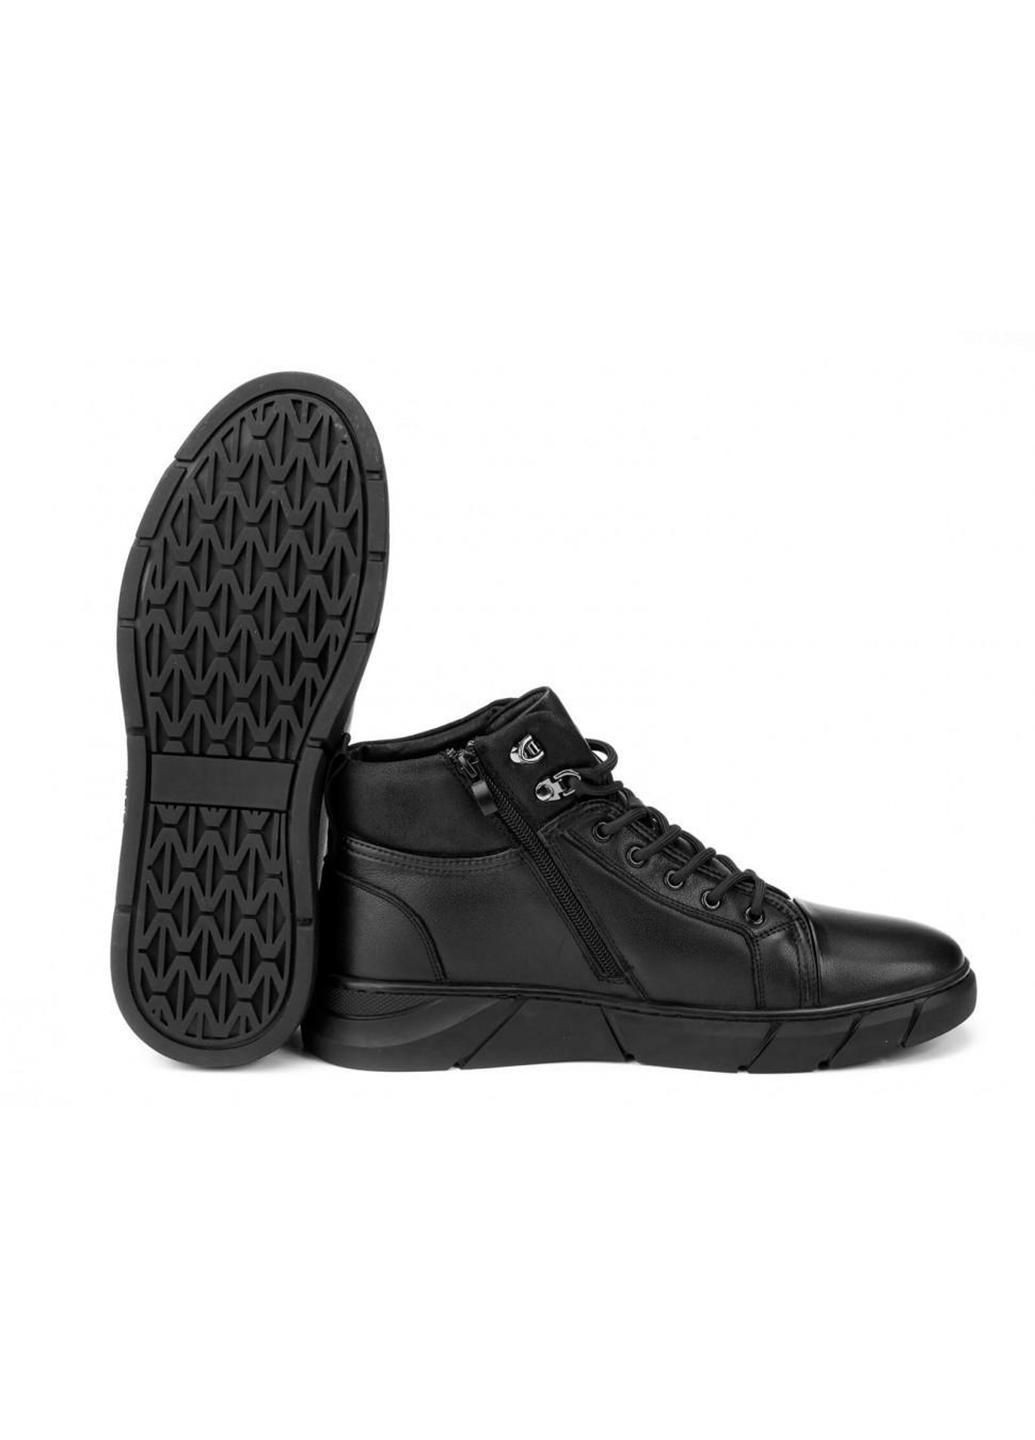 Черные зимние ботинки 7214313-б цвет черный Clemento